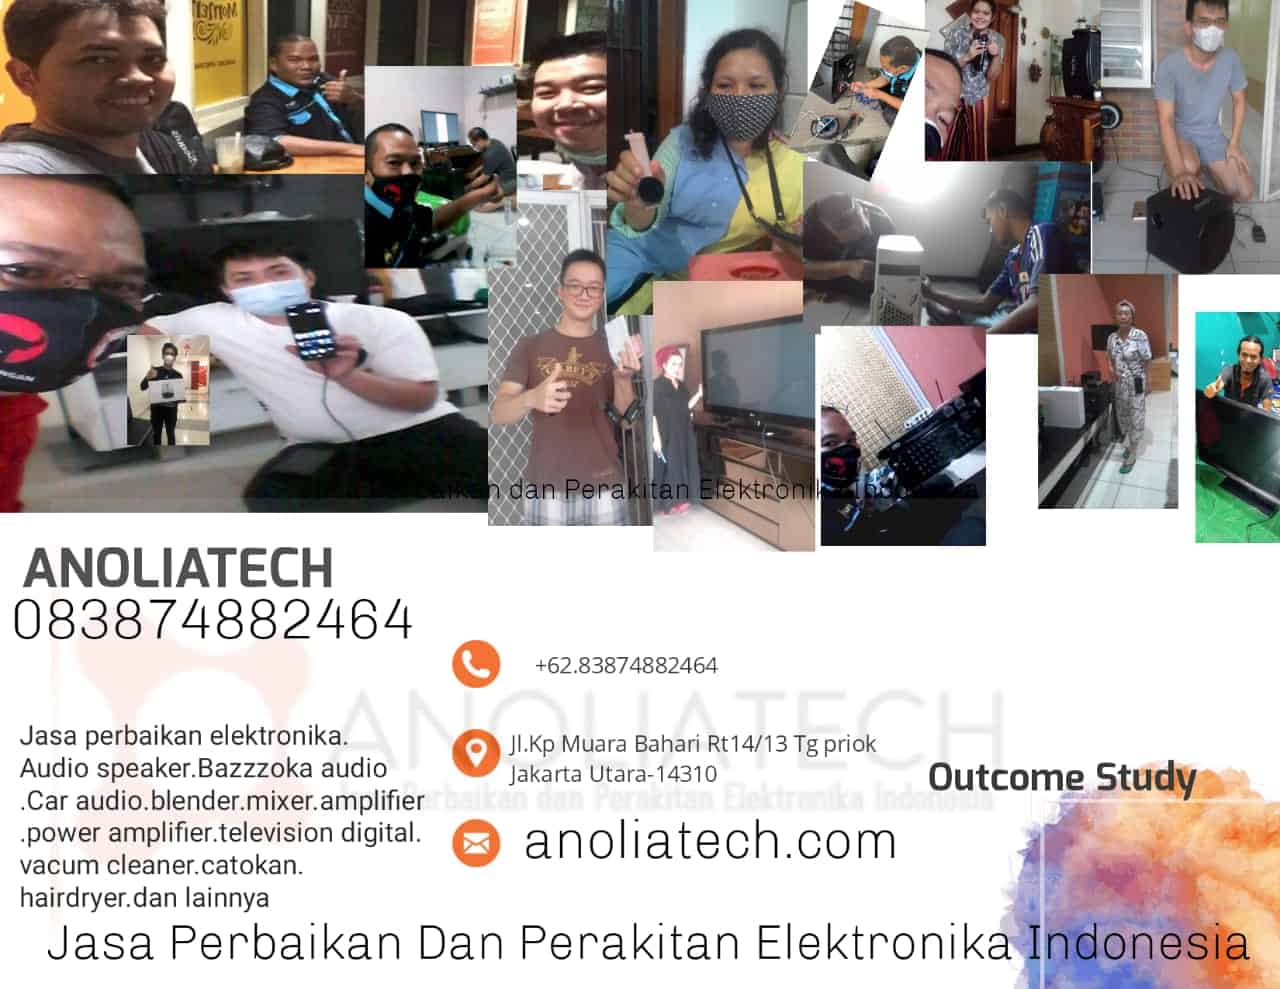 Anoliatech-Jasa Perbaikan dan Perakitan Elektronika Indonesia